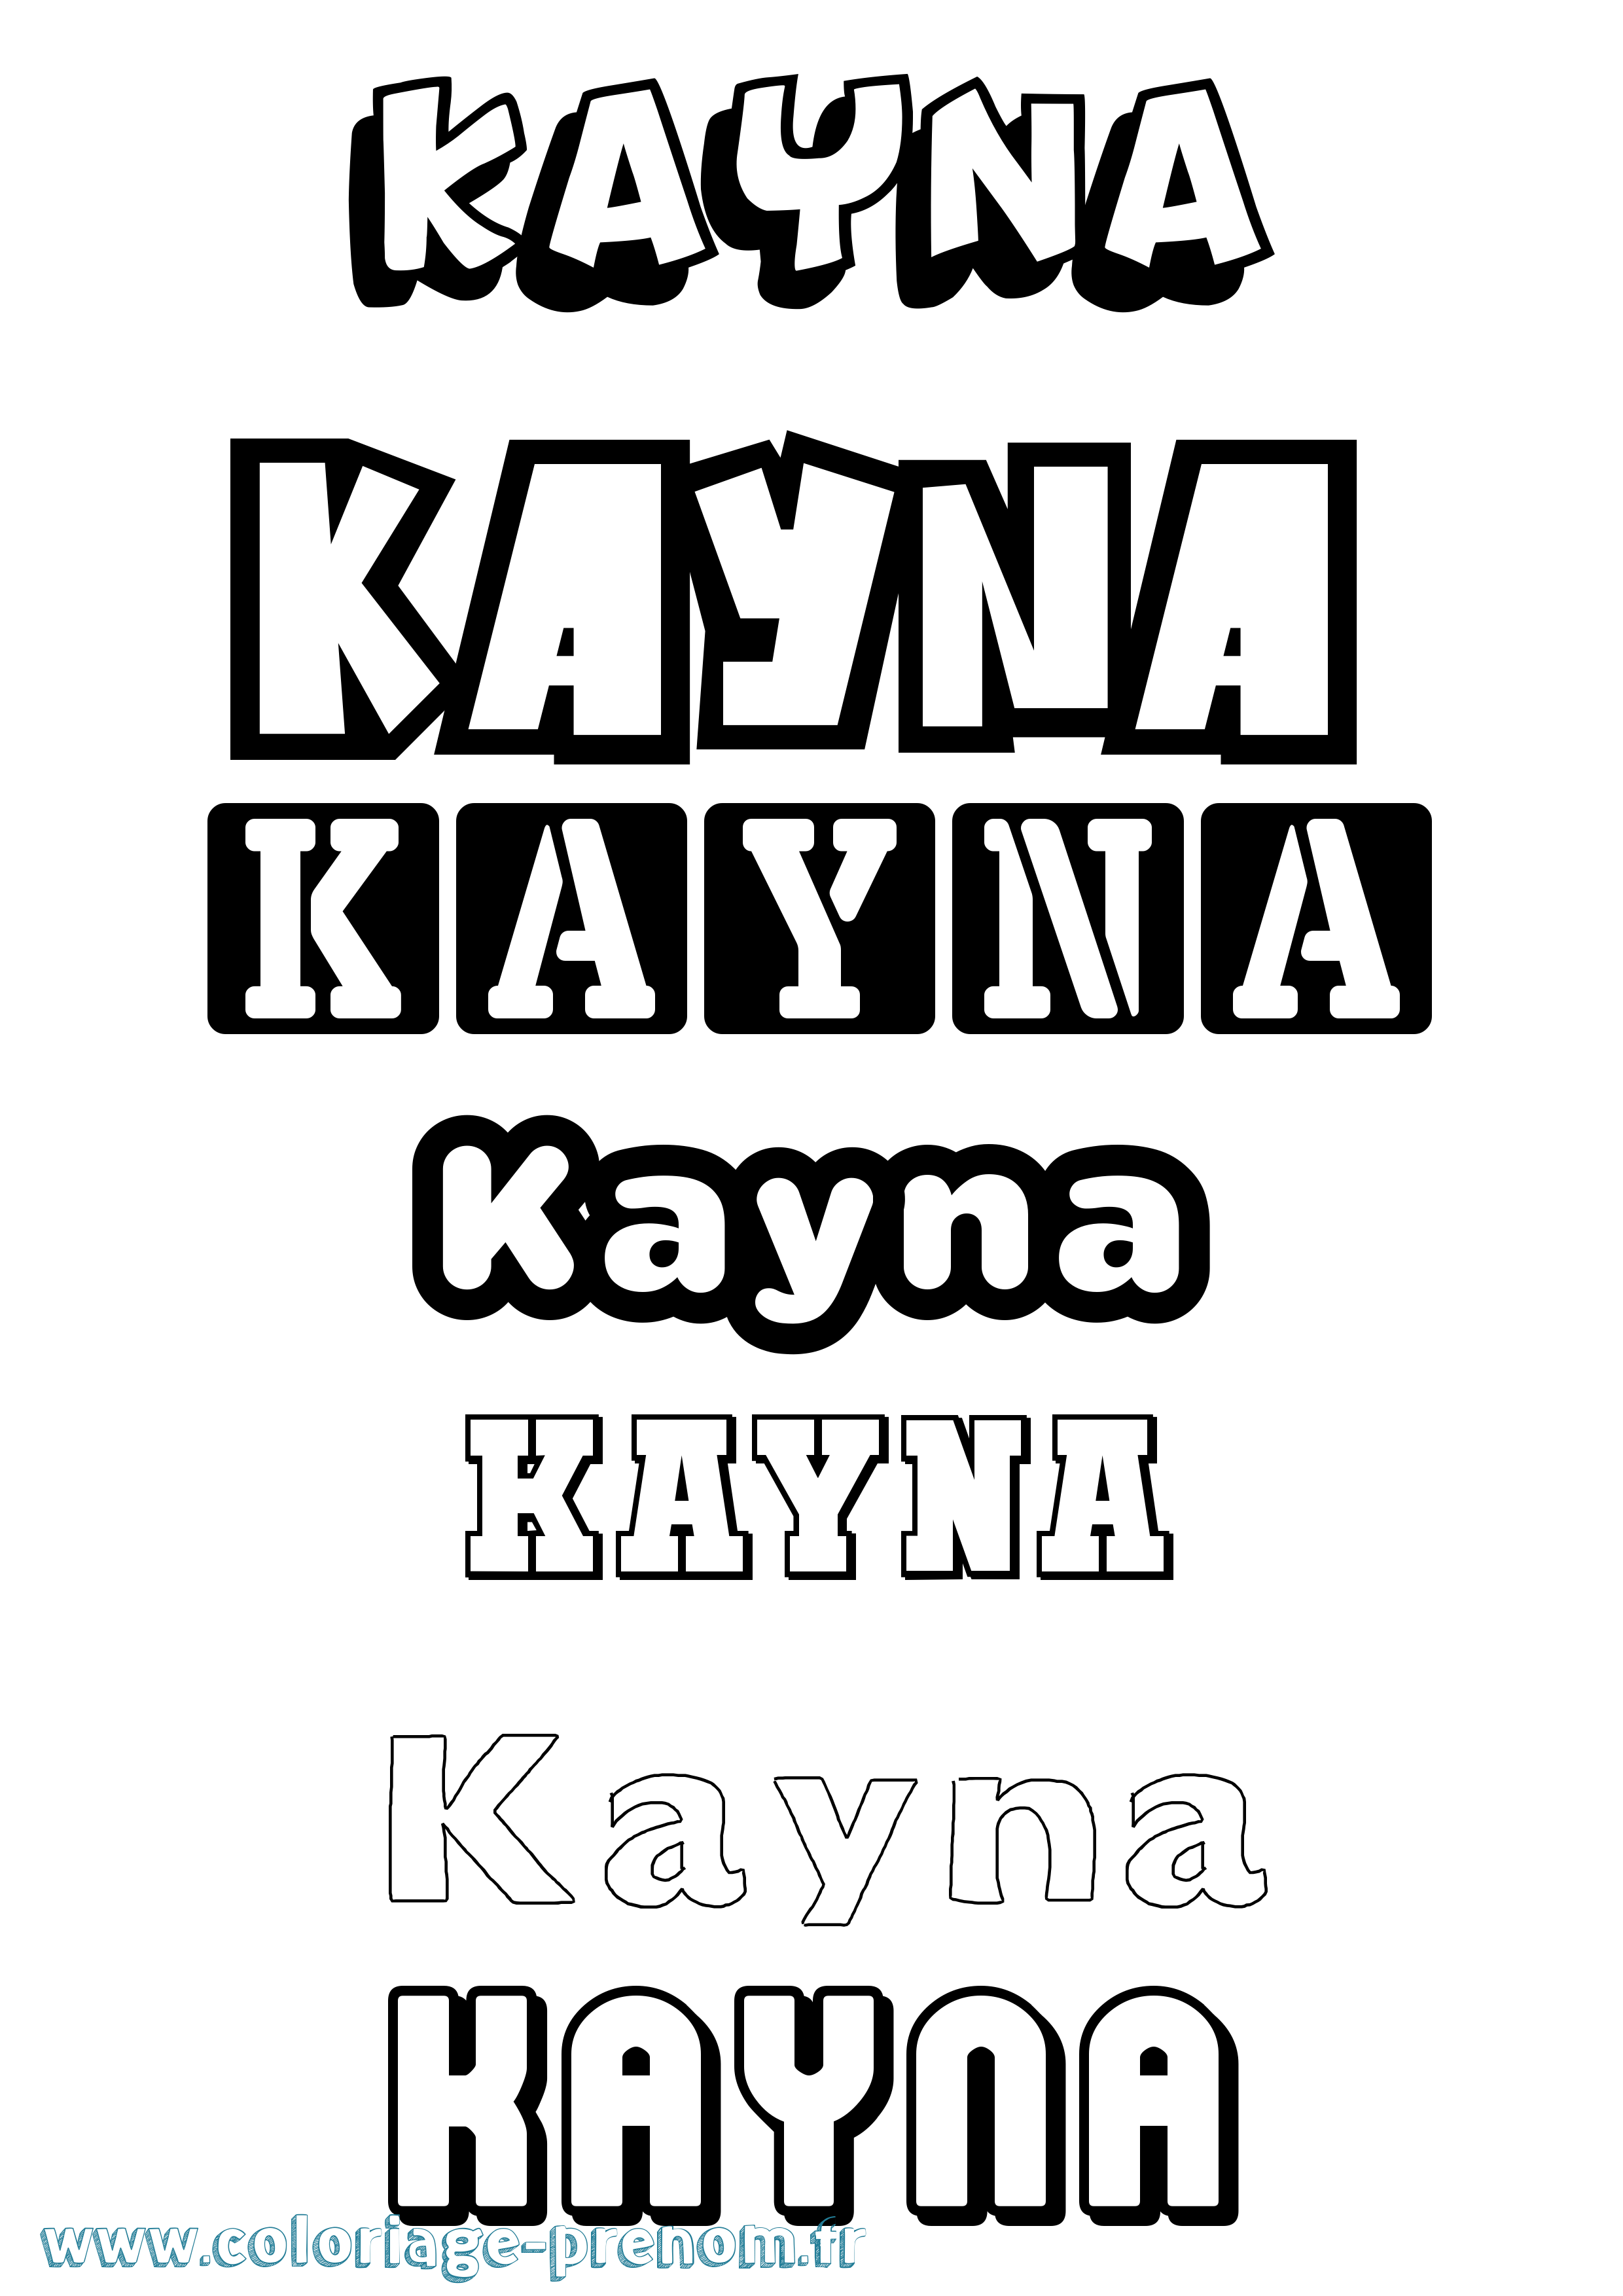 Coloriage prénom Kayna